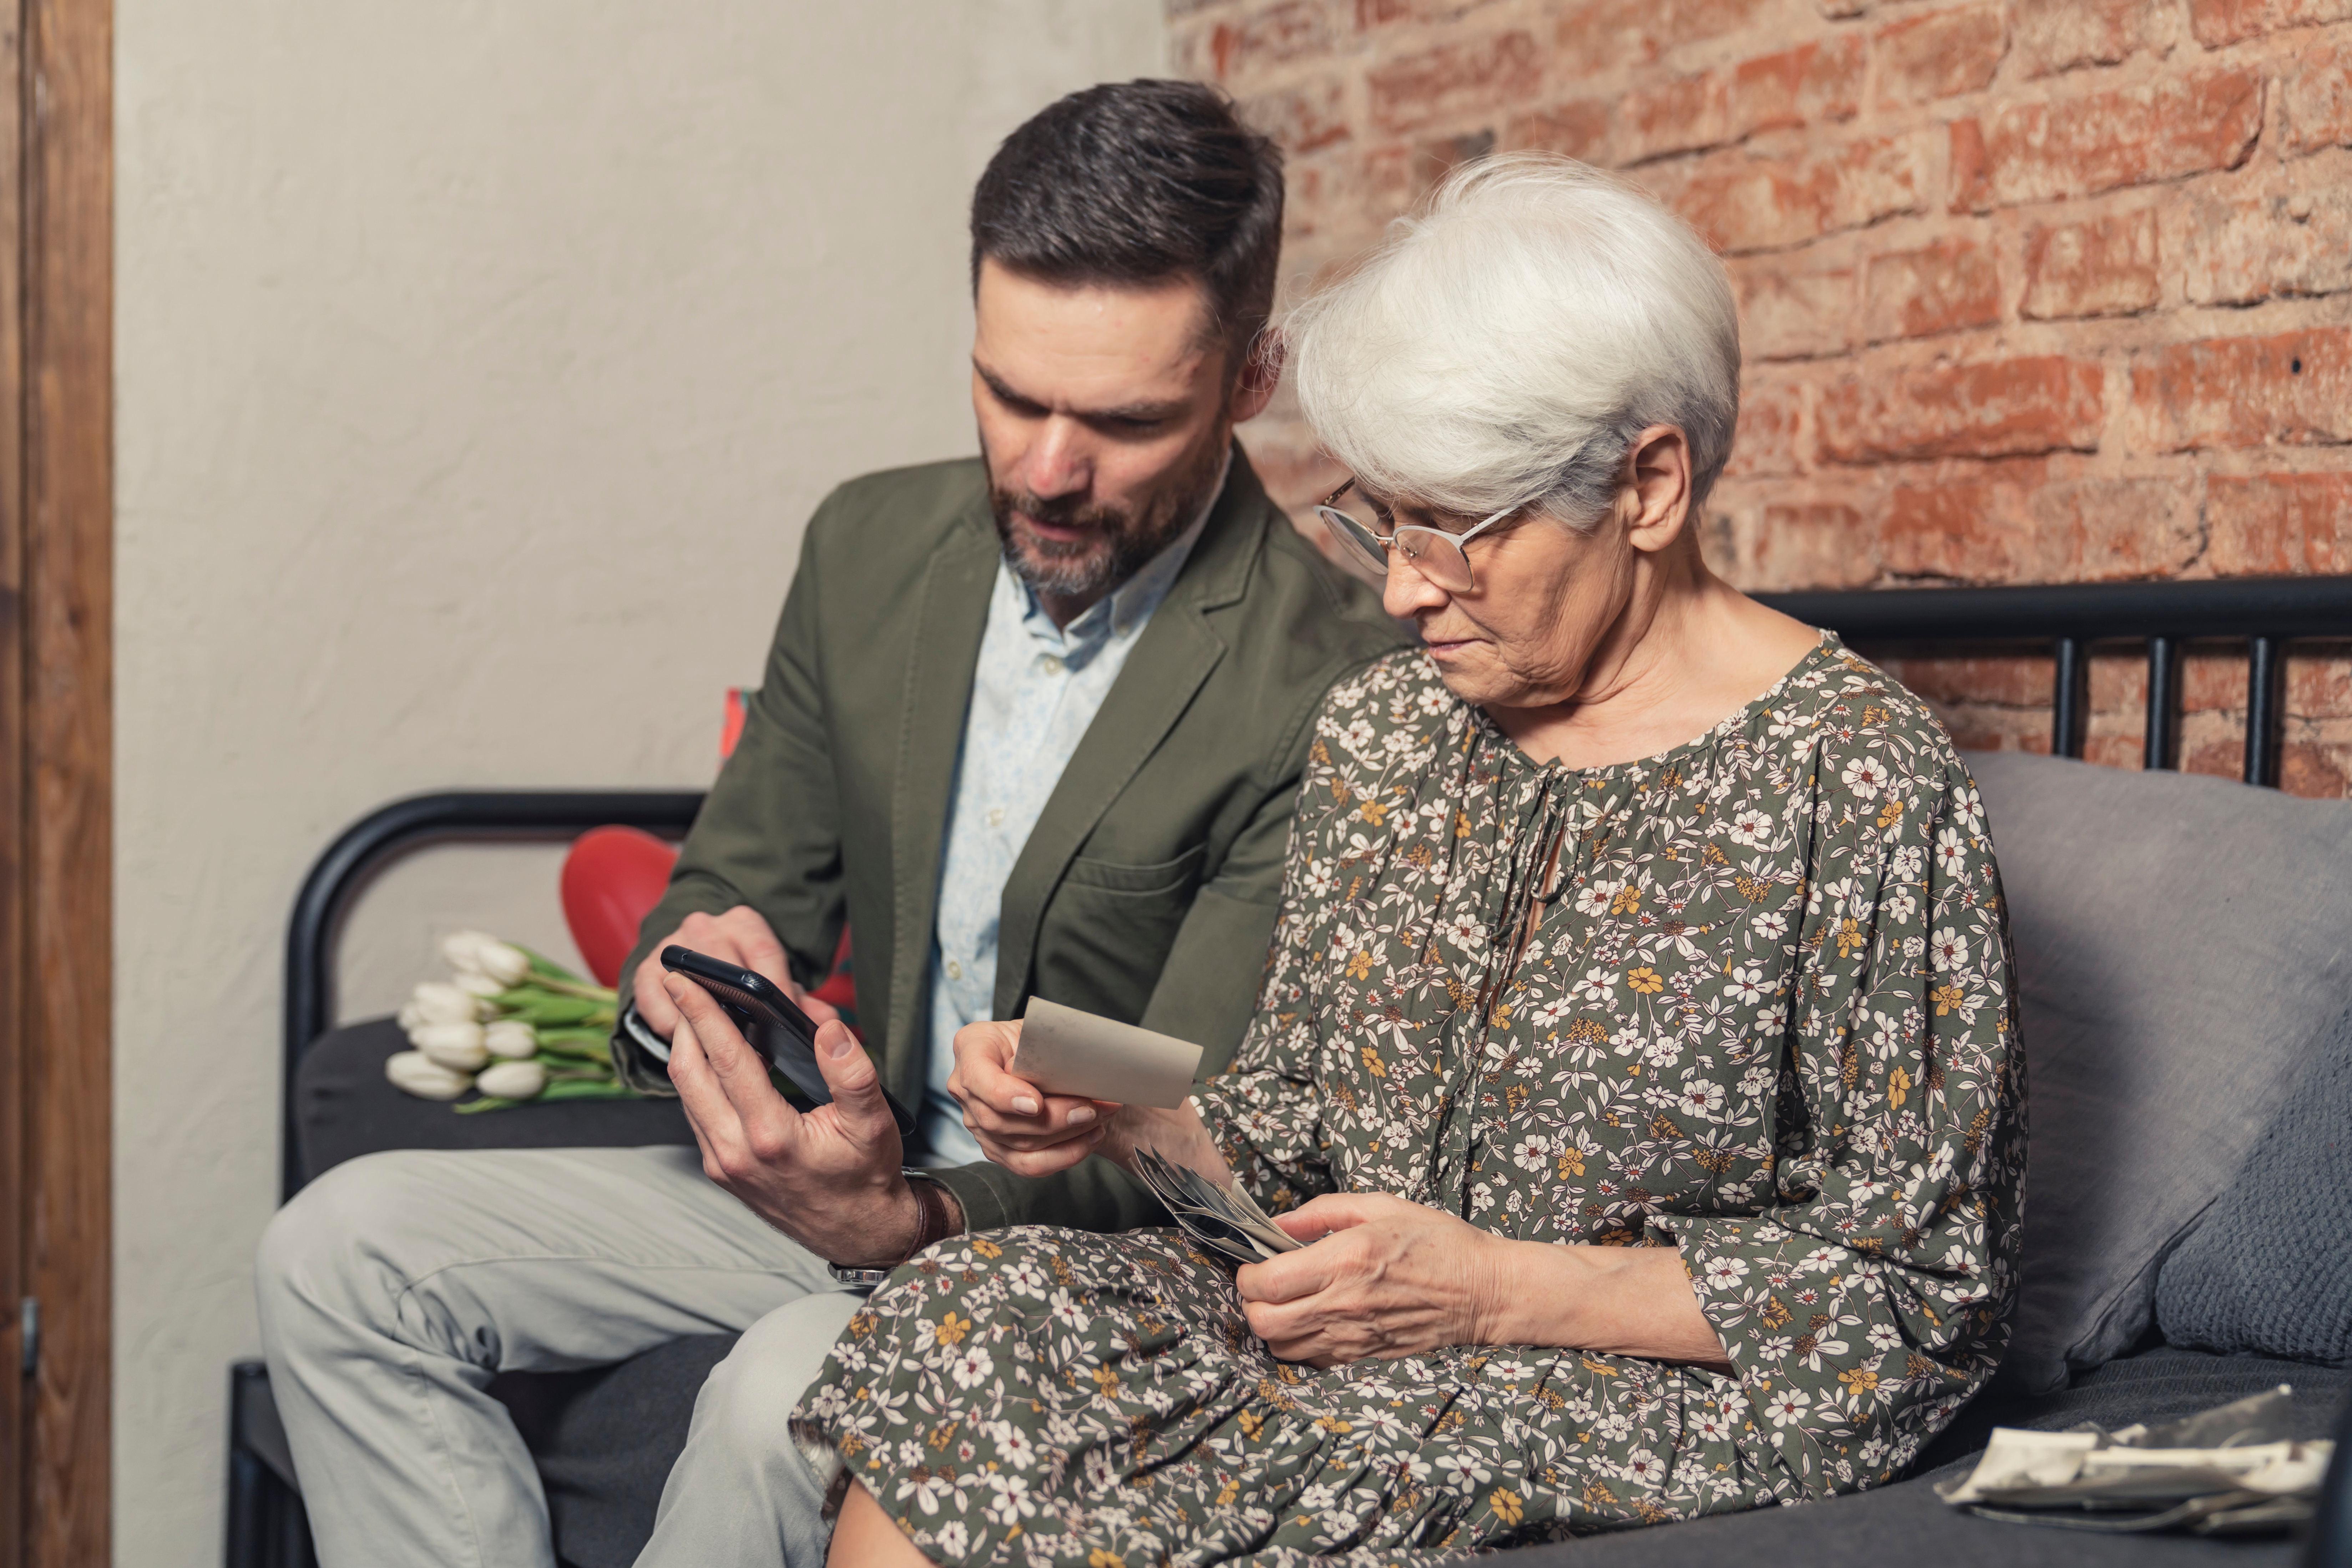 A man having a conversation with an elderly woman | Source: Shutterstock